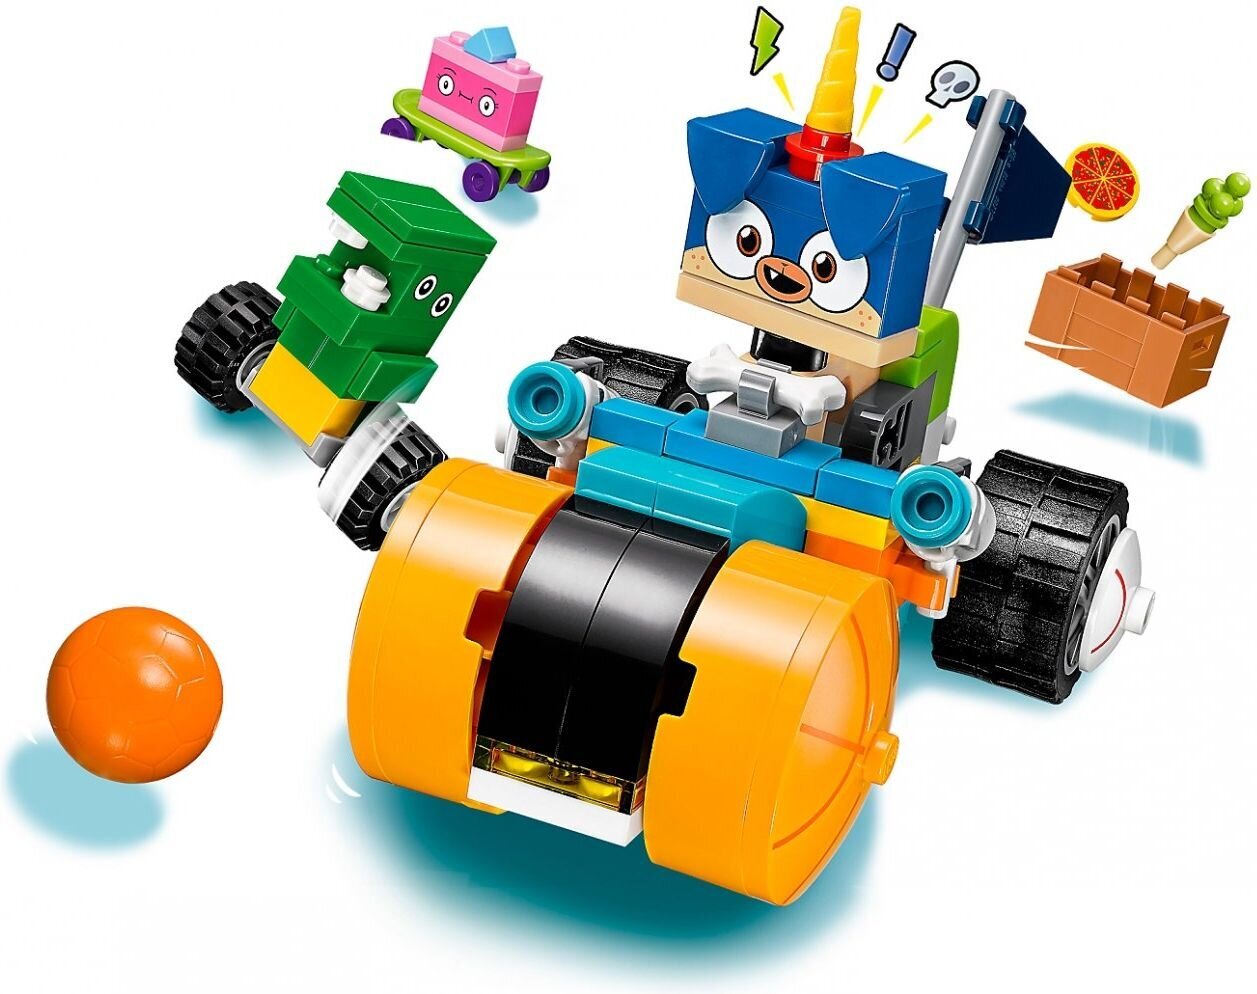 41452 LEGO® Unikitty Prince Puppycorn Trike kaina ir informacija | Konstruktoriai ir kaladėlės | pigu.lt